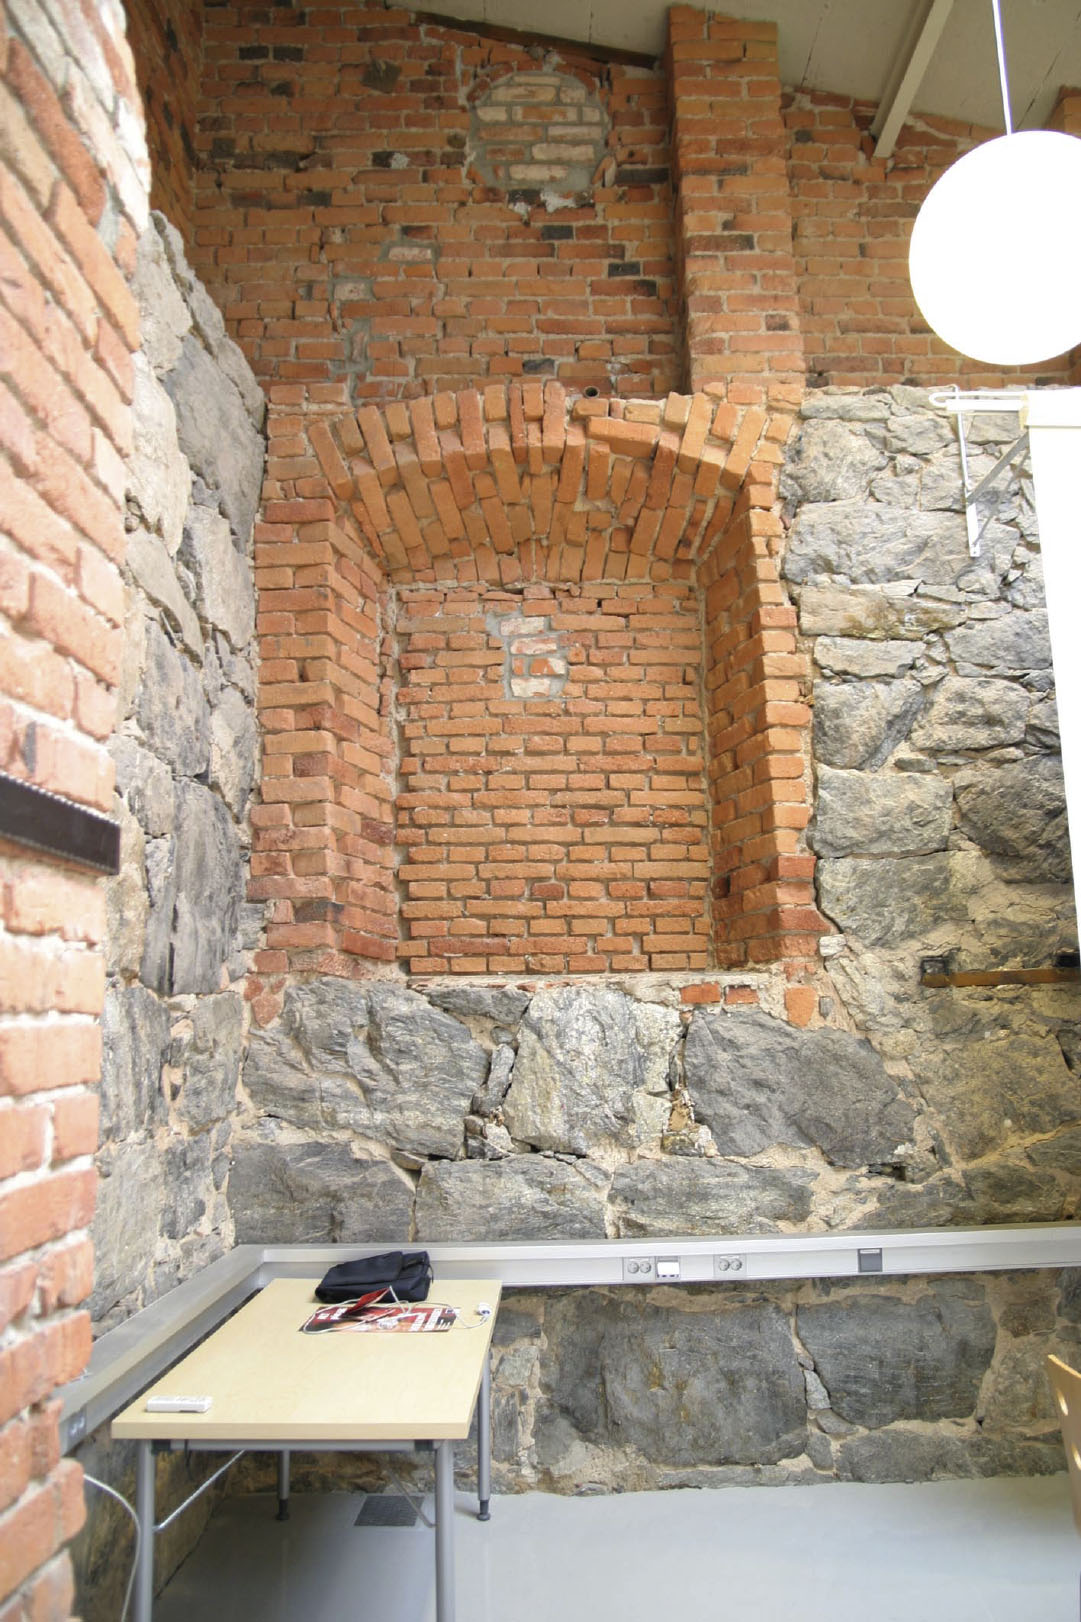 ) Rummens ytterväggar är murade och utgörs av natursten och rött tegel med inslag av gult tegel. I det västra rummet fi nns tre murstockar, två mot söderväggen och en mot norrväggen.